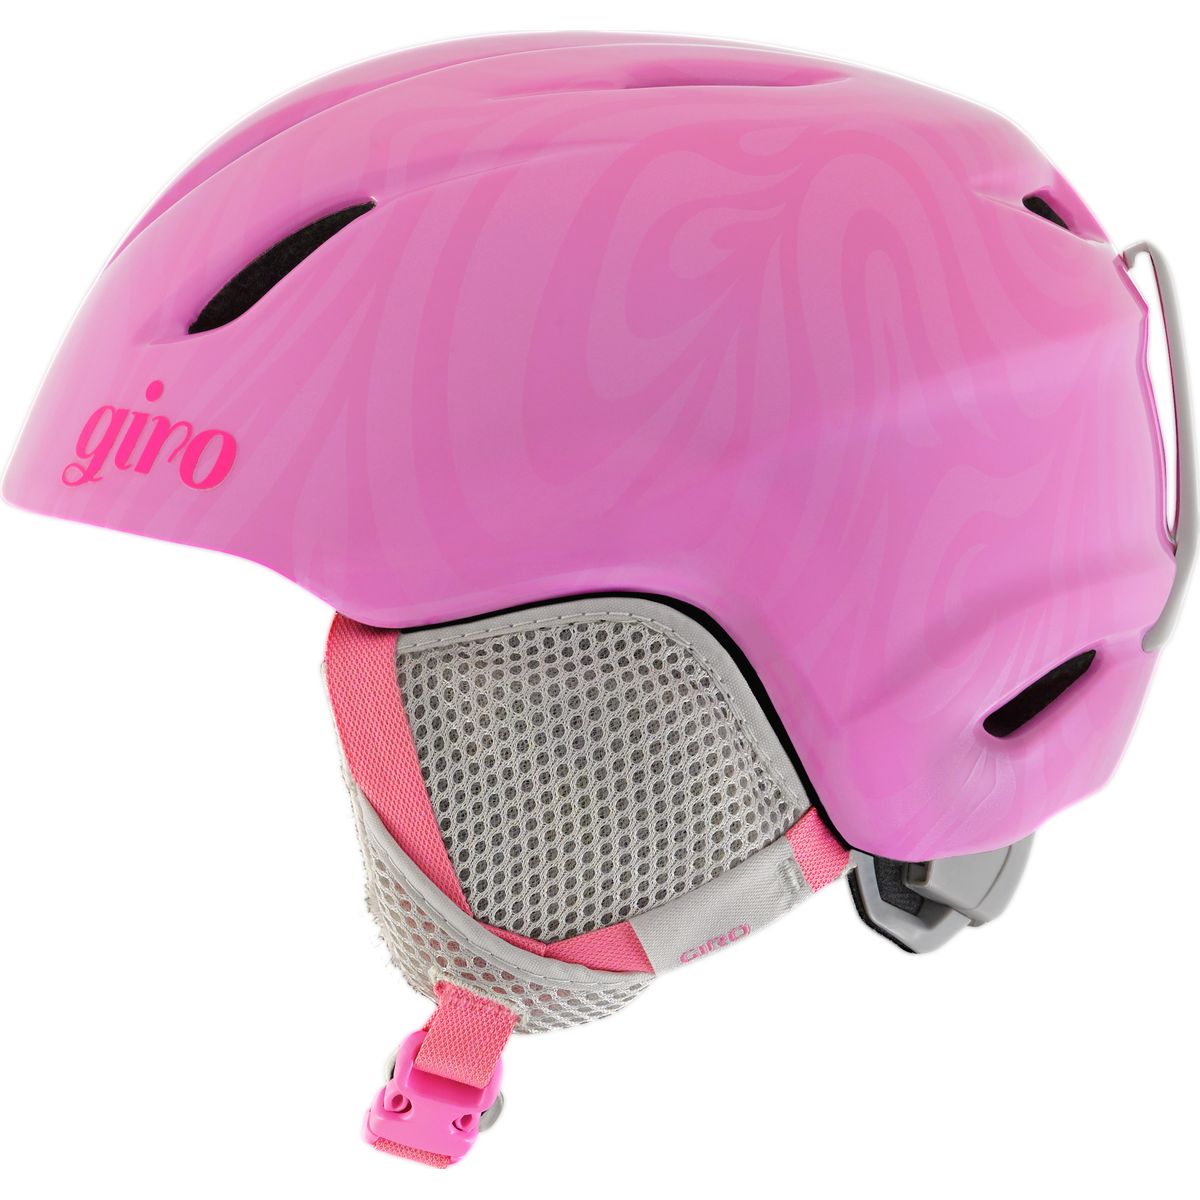 Giro Launch Helmet - Kids' Pink Swirl